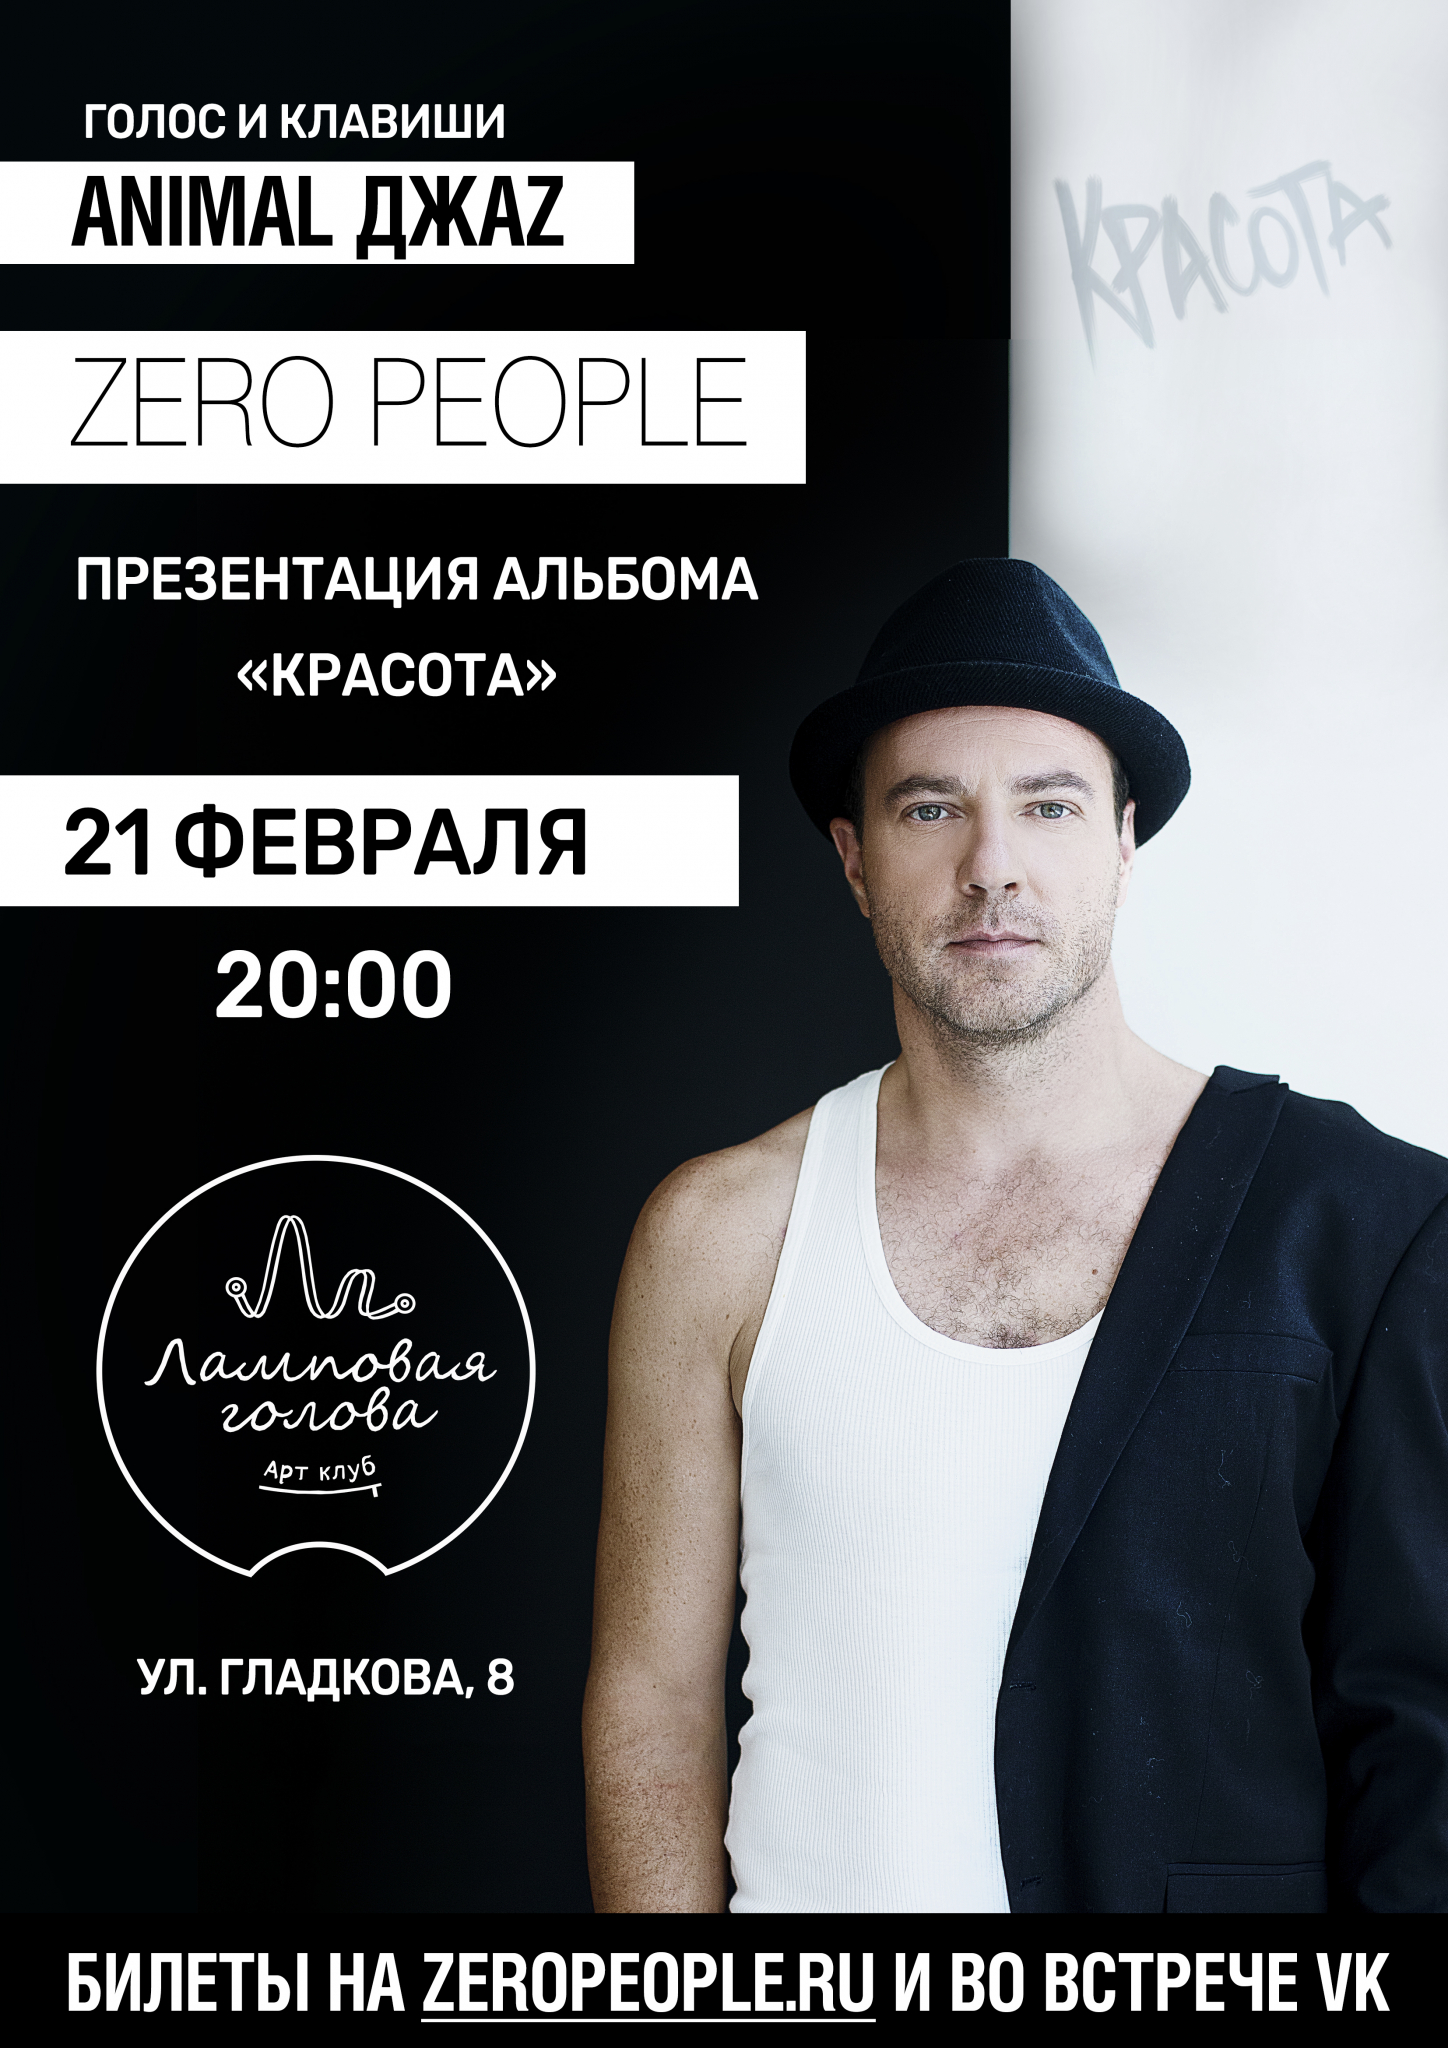 В Пензе 21 февраля выступит проект лидера Animal ДжаZ - группа "Zero People"